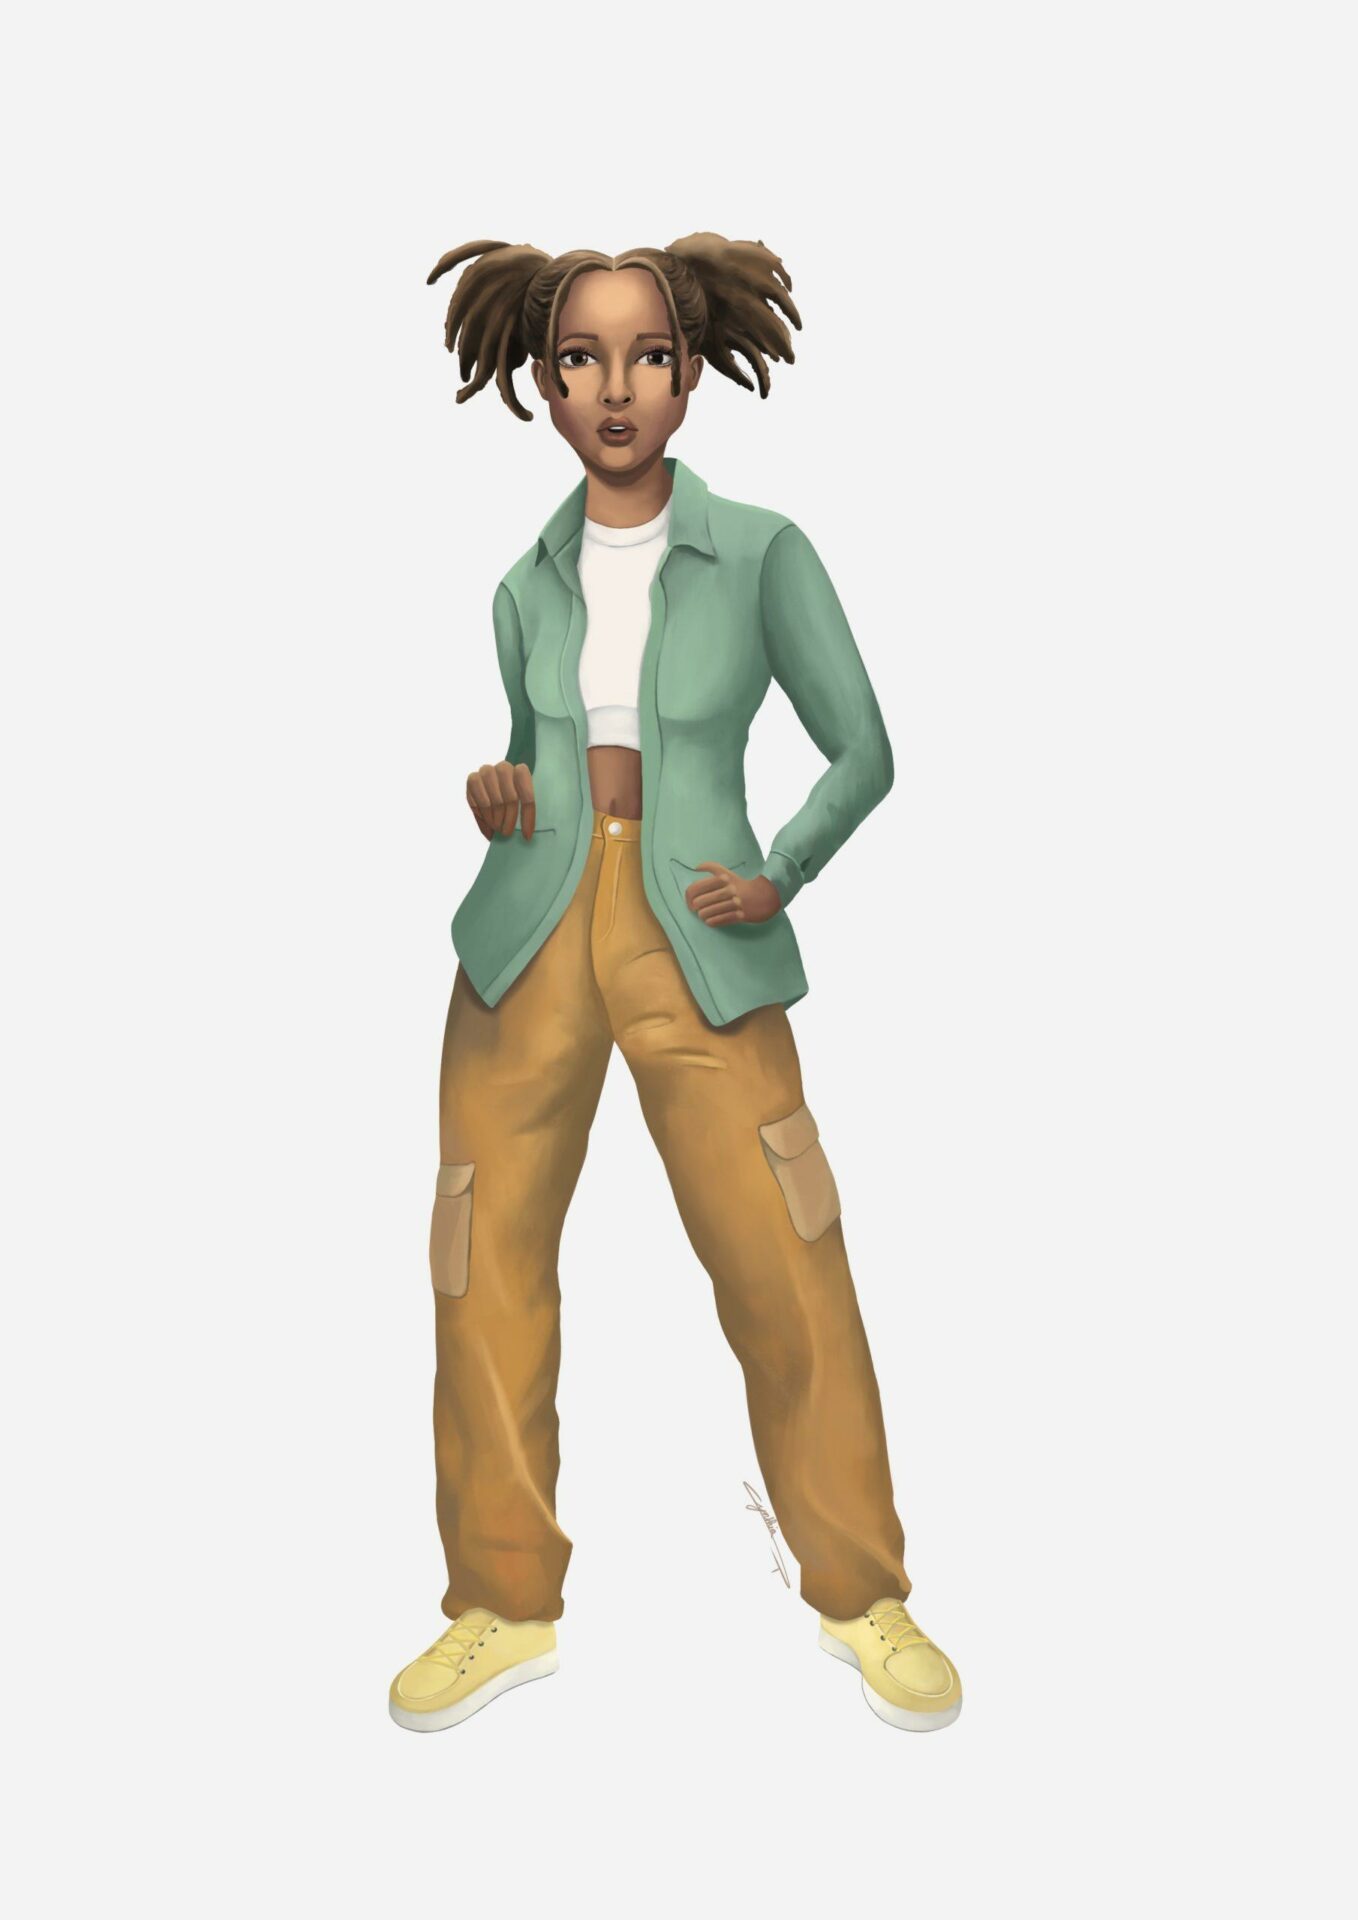 Personnage illustration jeune femme afro fait par l’illustratrice Cynthia Artstudio